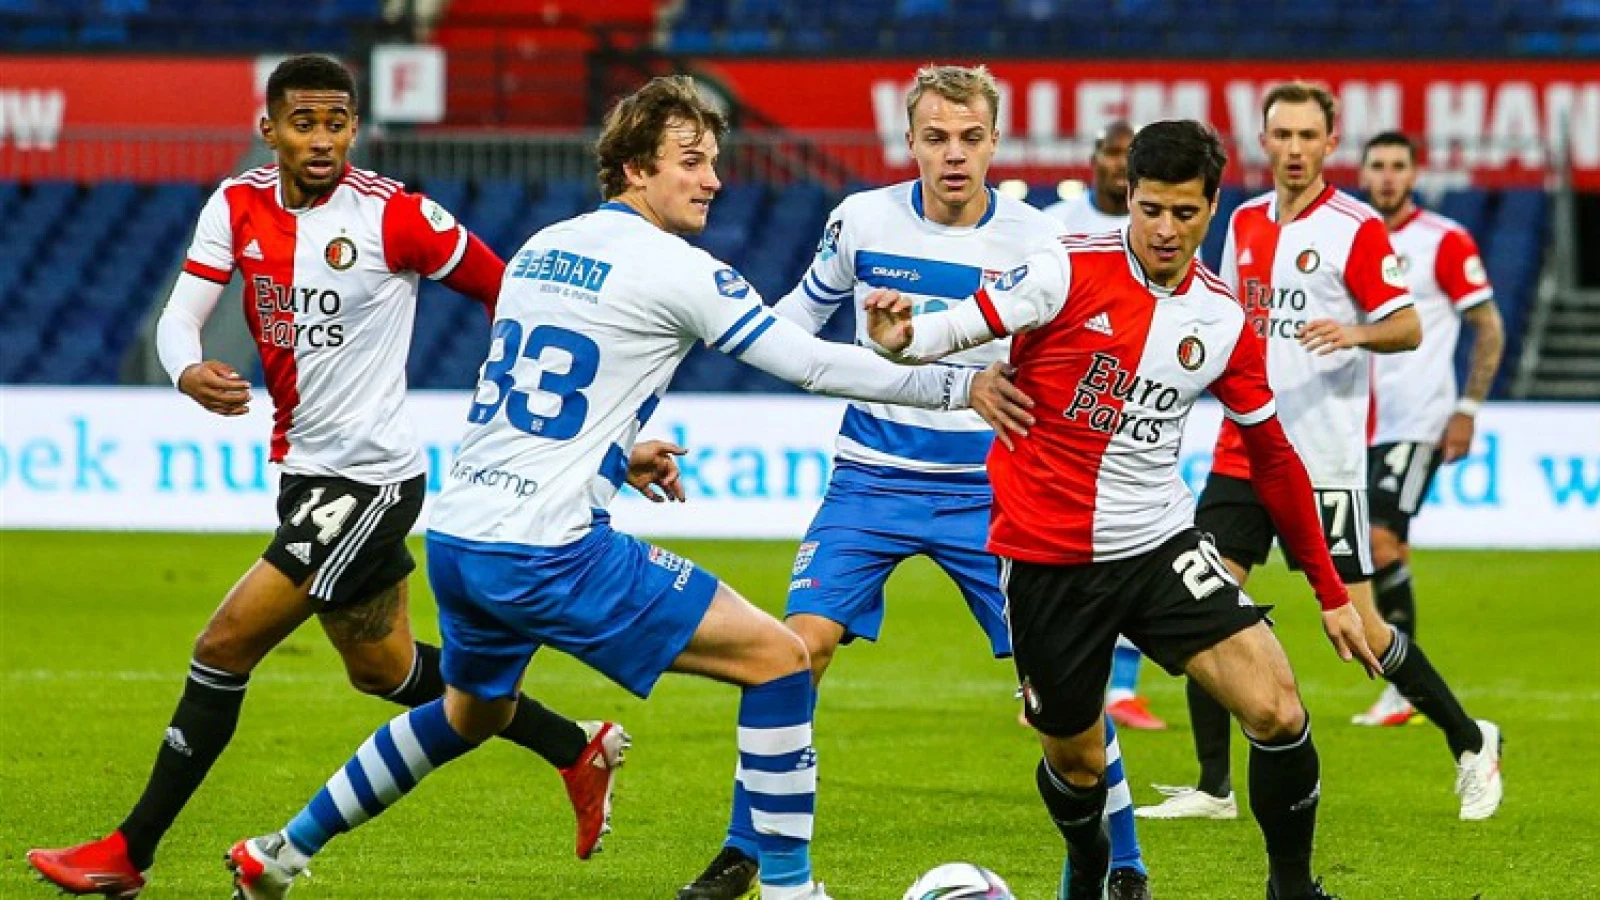 Teixeira mag vertrekken en zit niet bij wedstrijdselectie tegen Vitesse